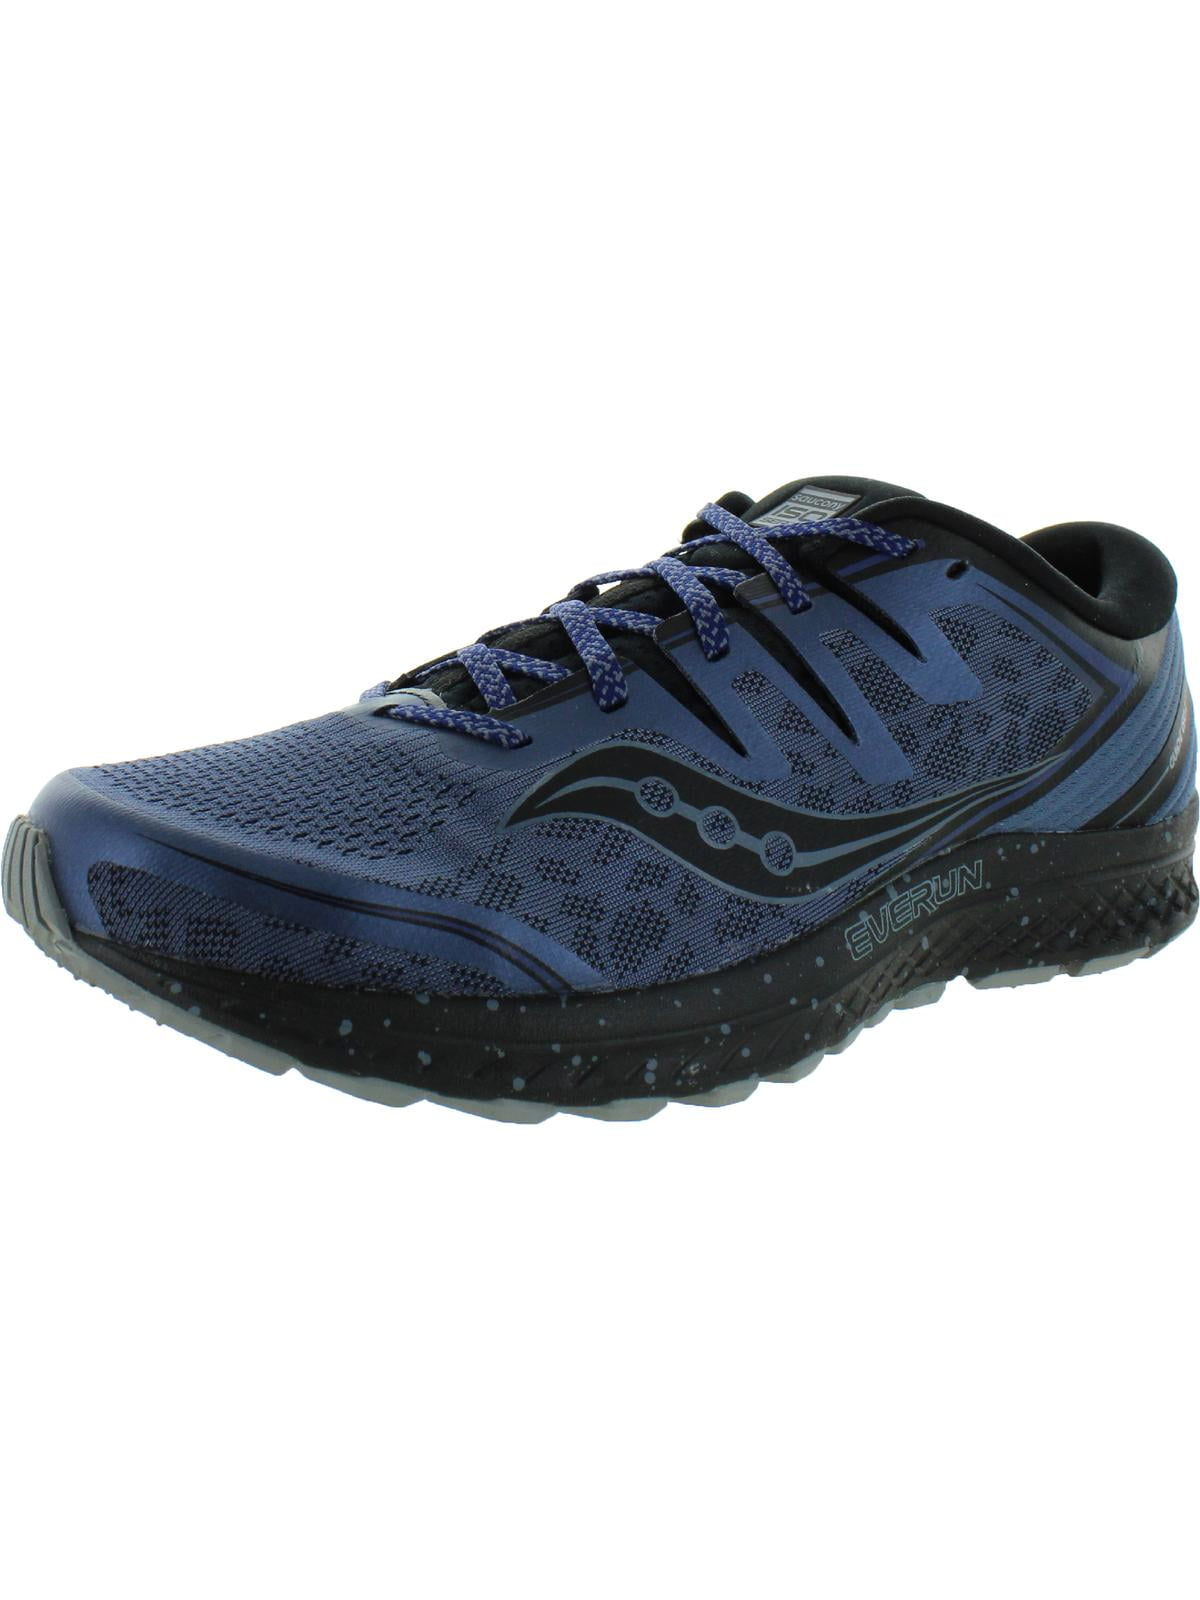 10 D Slate/Blue US M Saucony Men's Guide ISO 2 TR Running Shoe